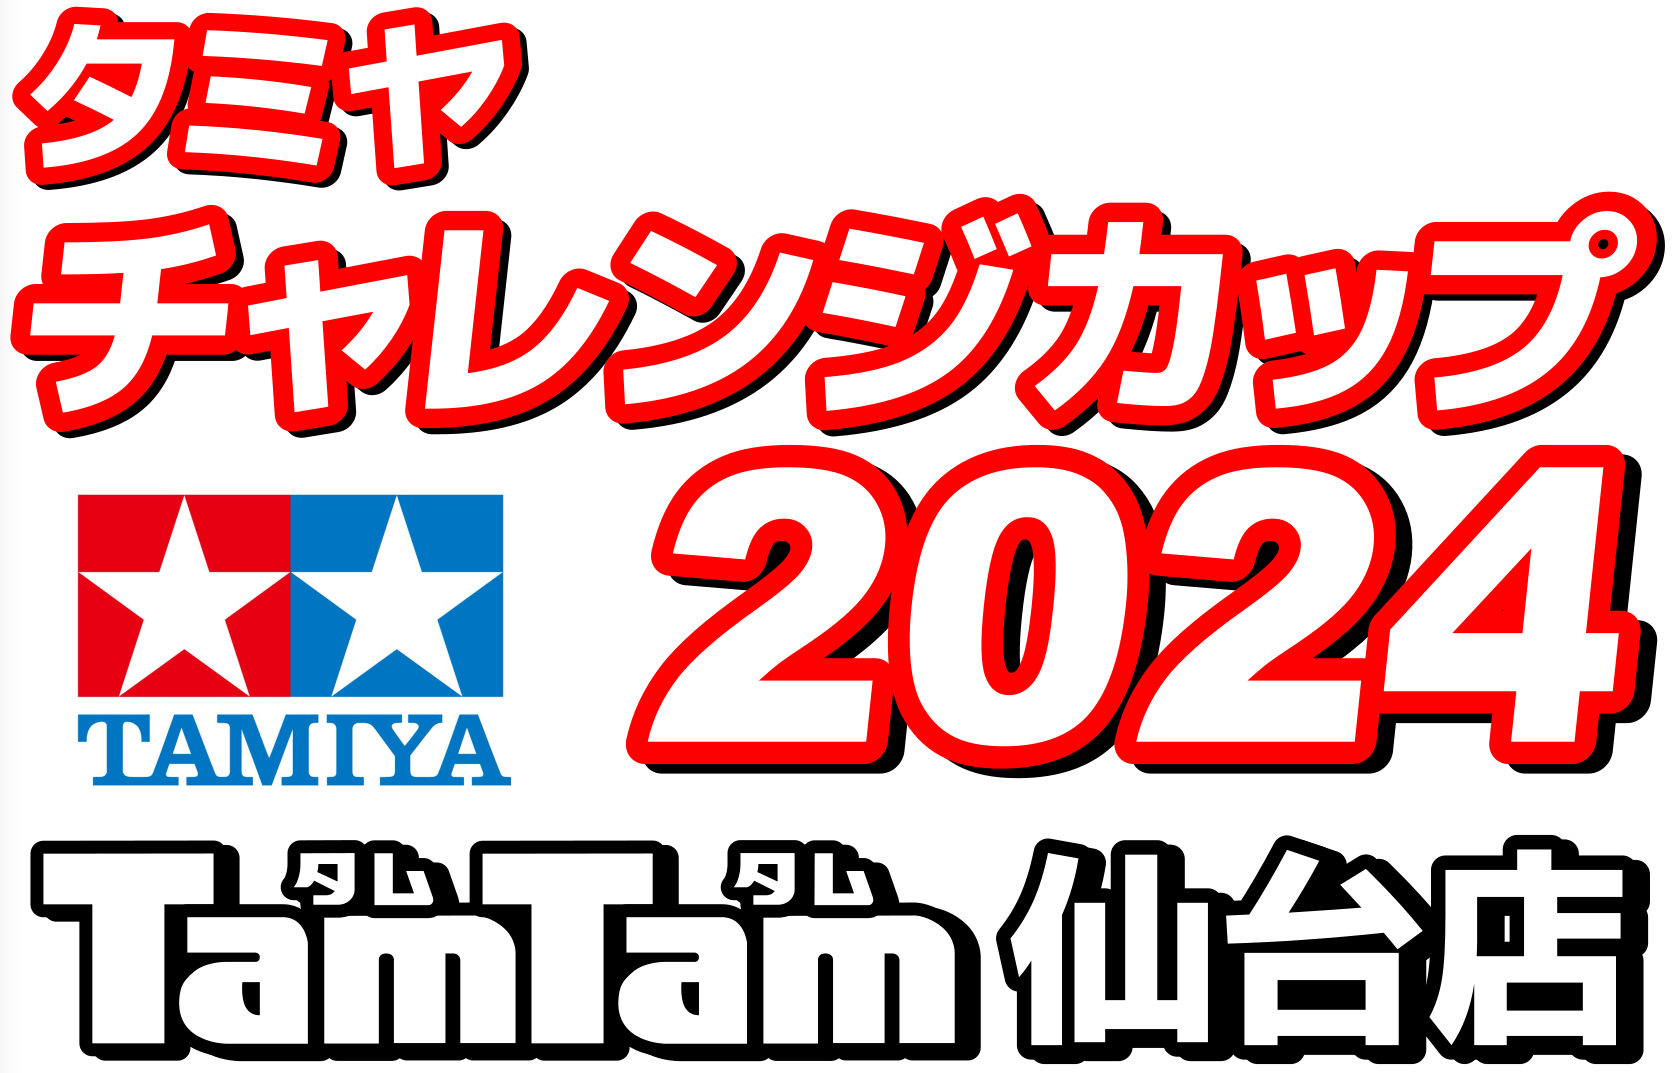 〈RC/レースイベント〉5/5 タミヤチャレンジカップ 2024開催のお知らせ